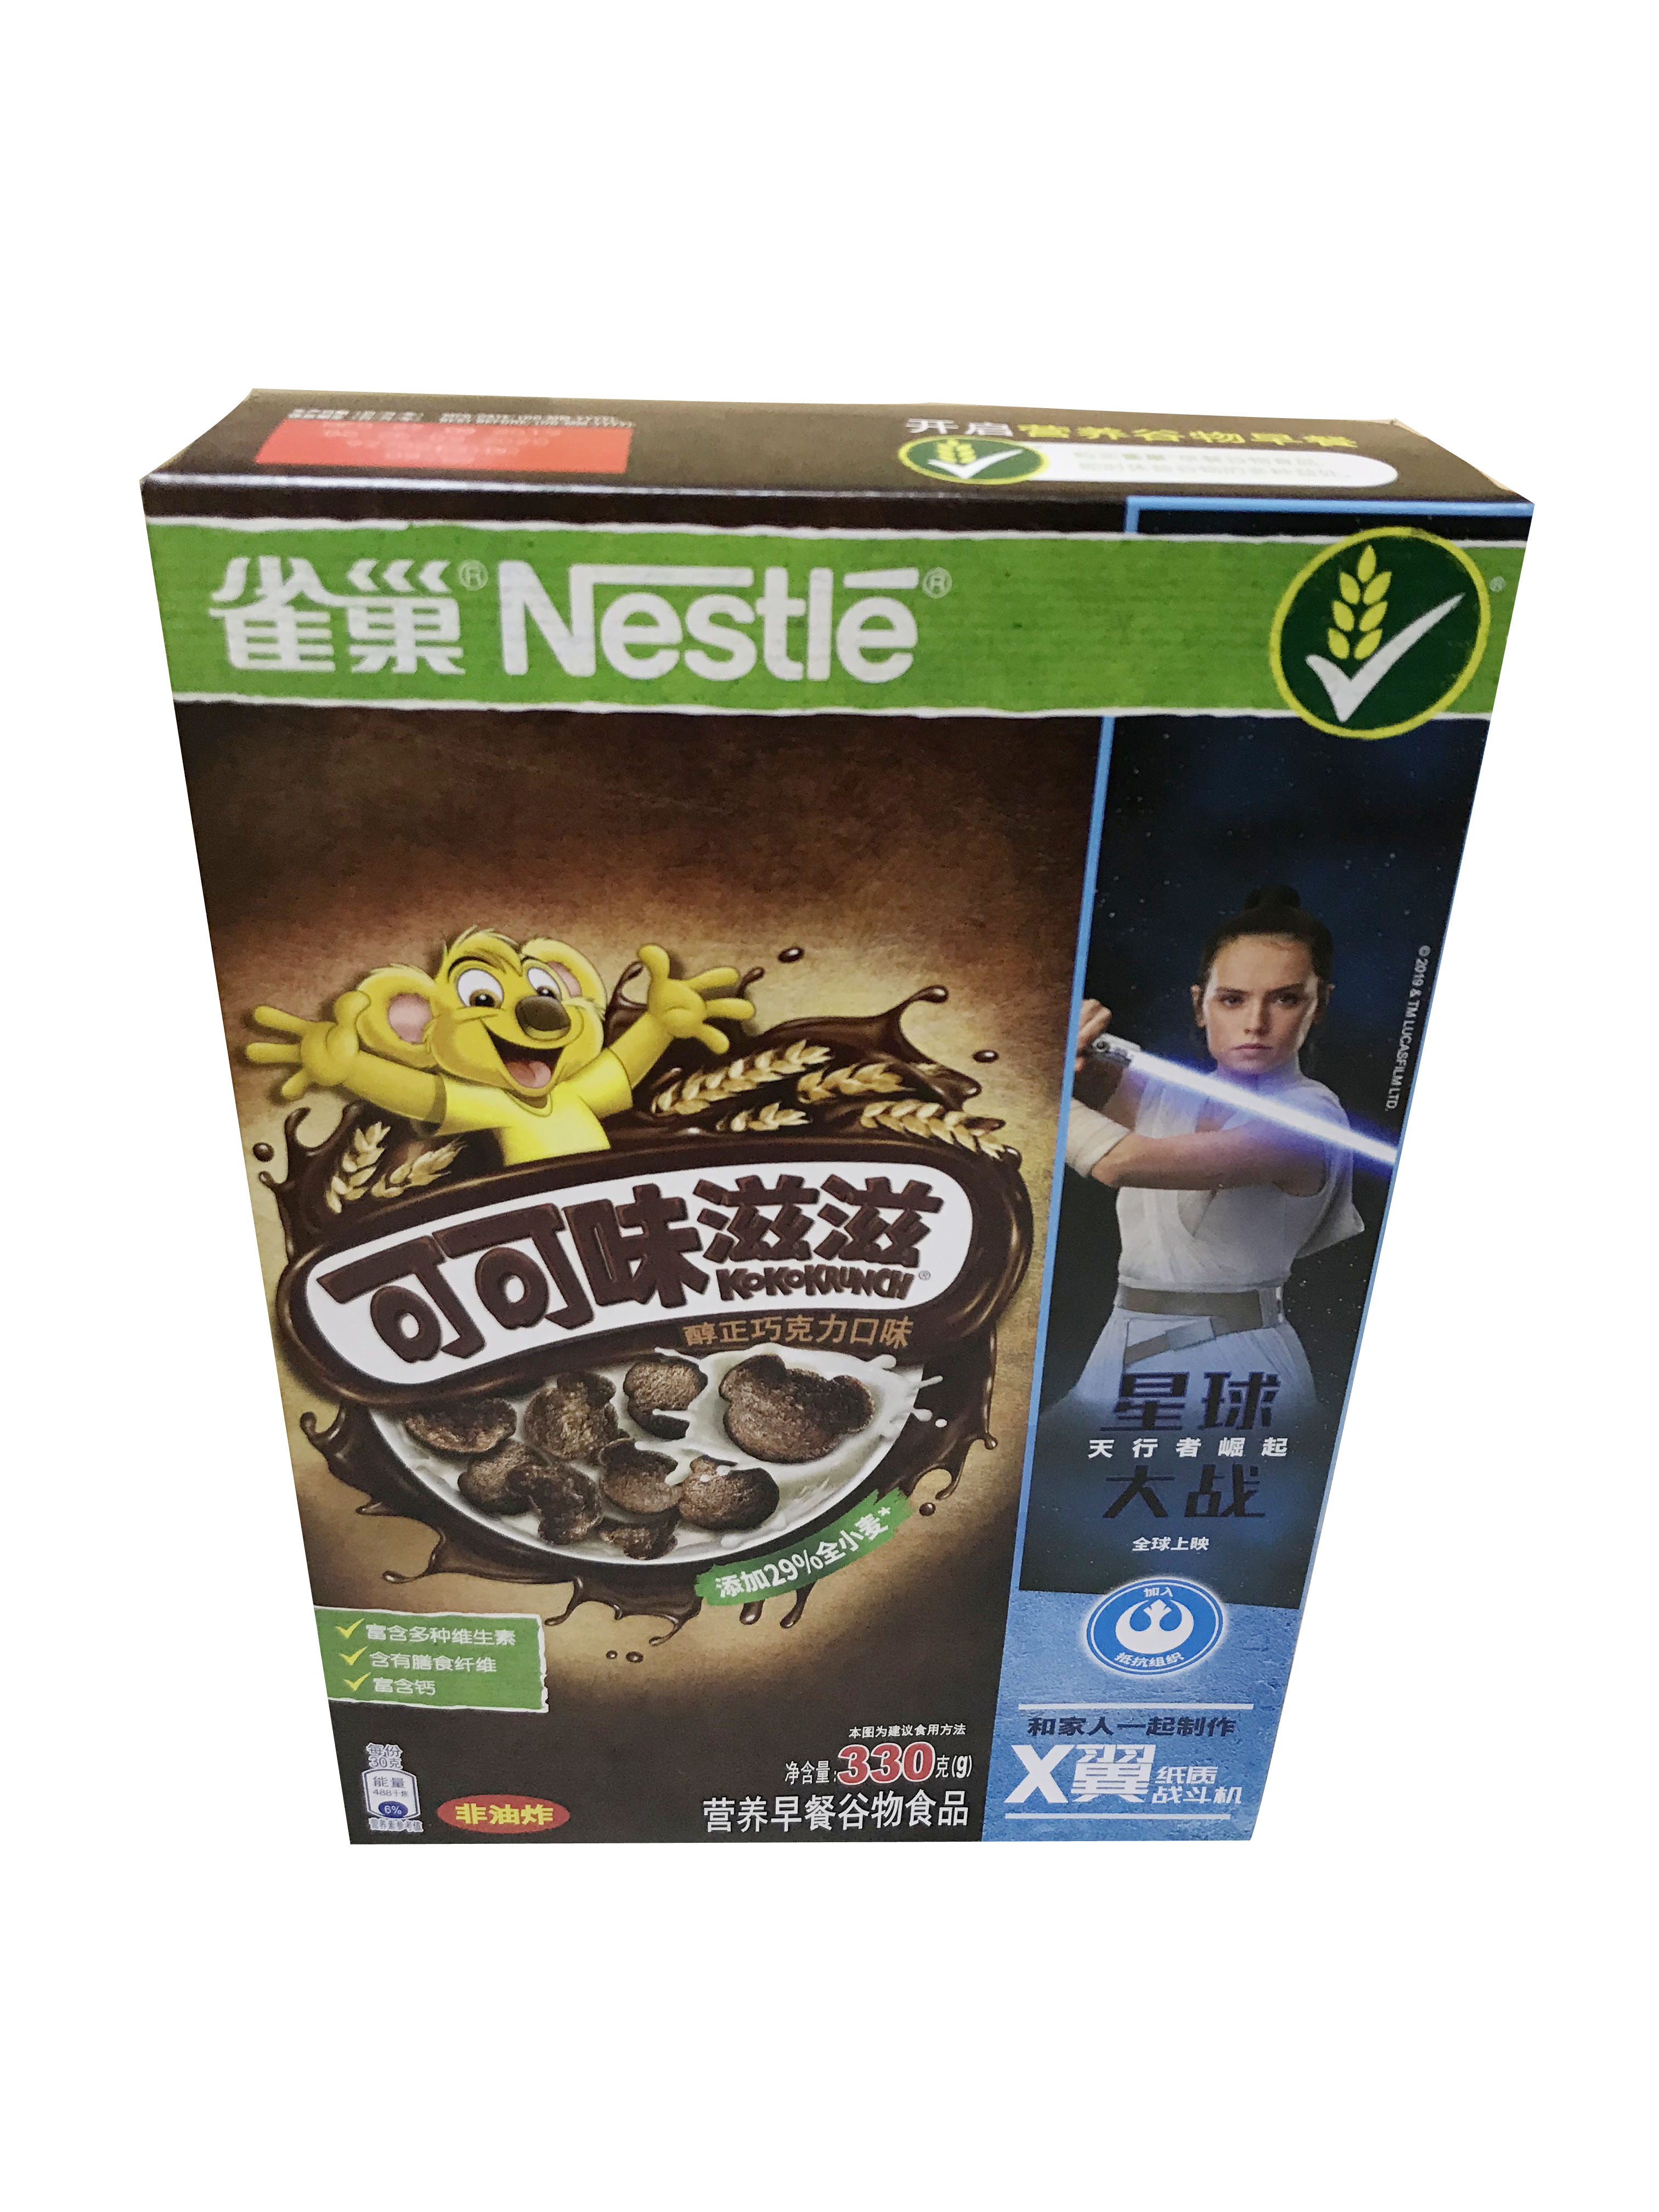 包邮雀巢可可味滋滋醇正巧克力早餐麦片 Nestle kokokrunch 330g